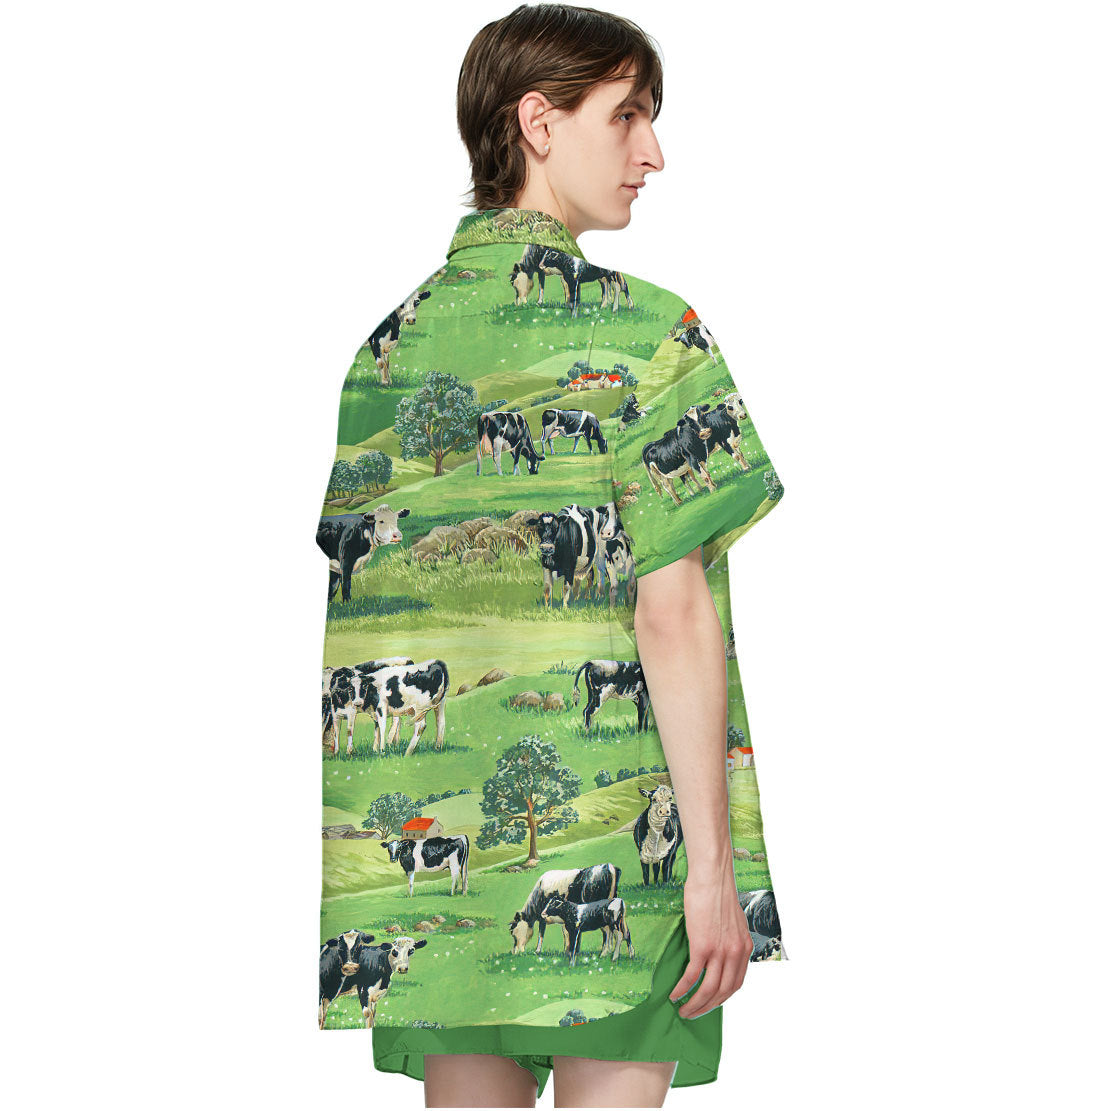 Dairy Cow Hawaii Shirt